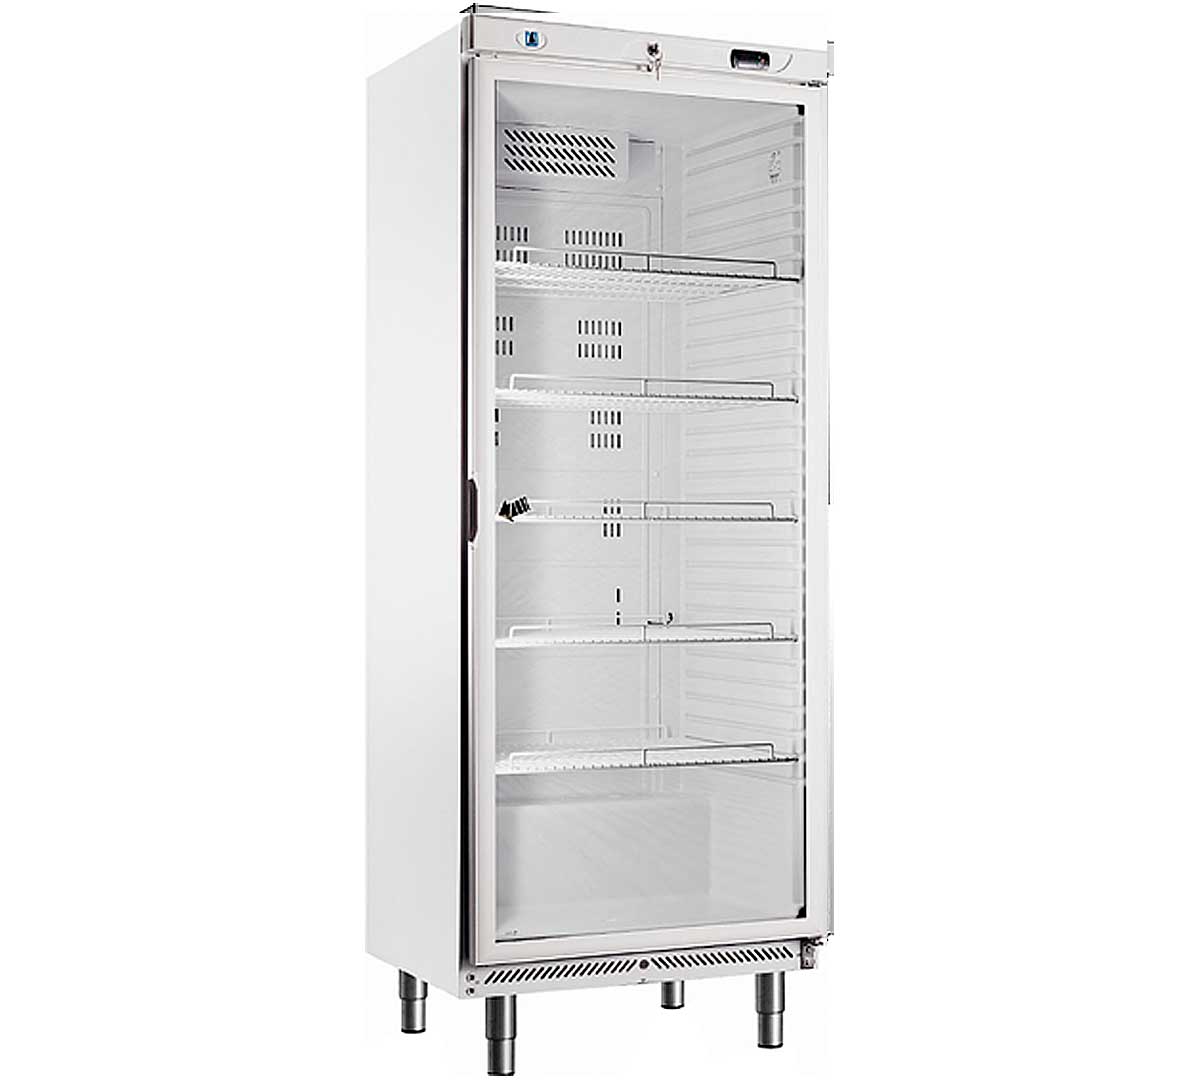 Armarios refrigeración especiales gastonorm serie 600 con puerta de cristal. Modelo GP-600-PV blanco digital